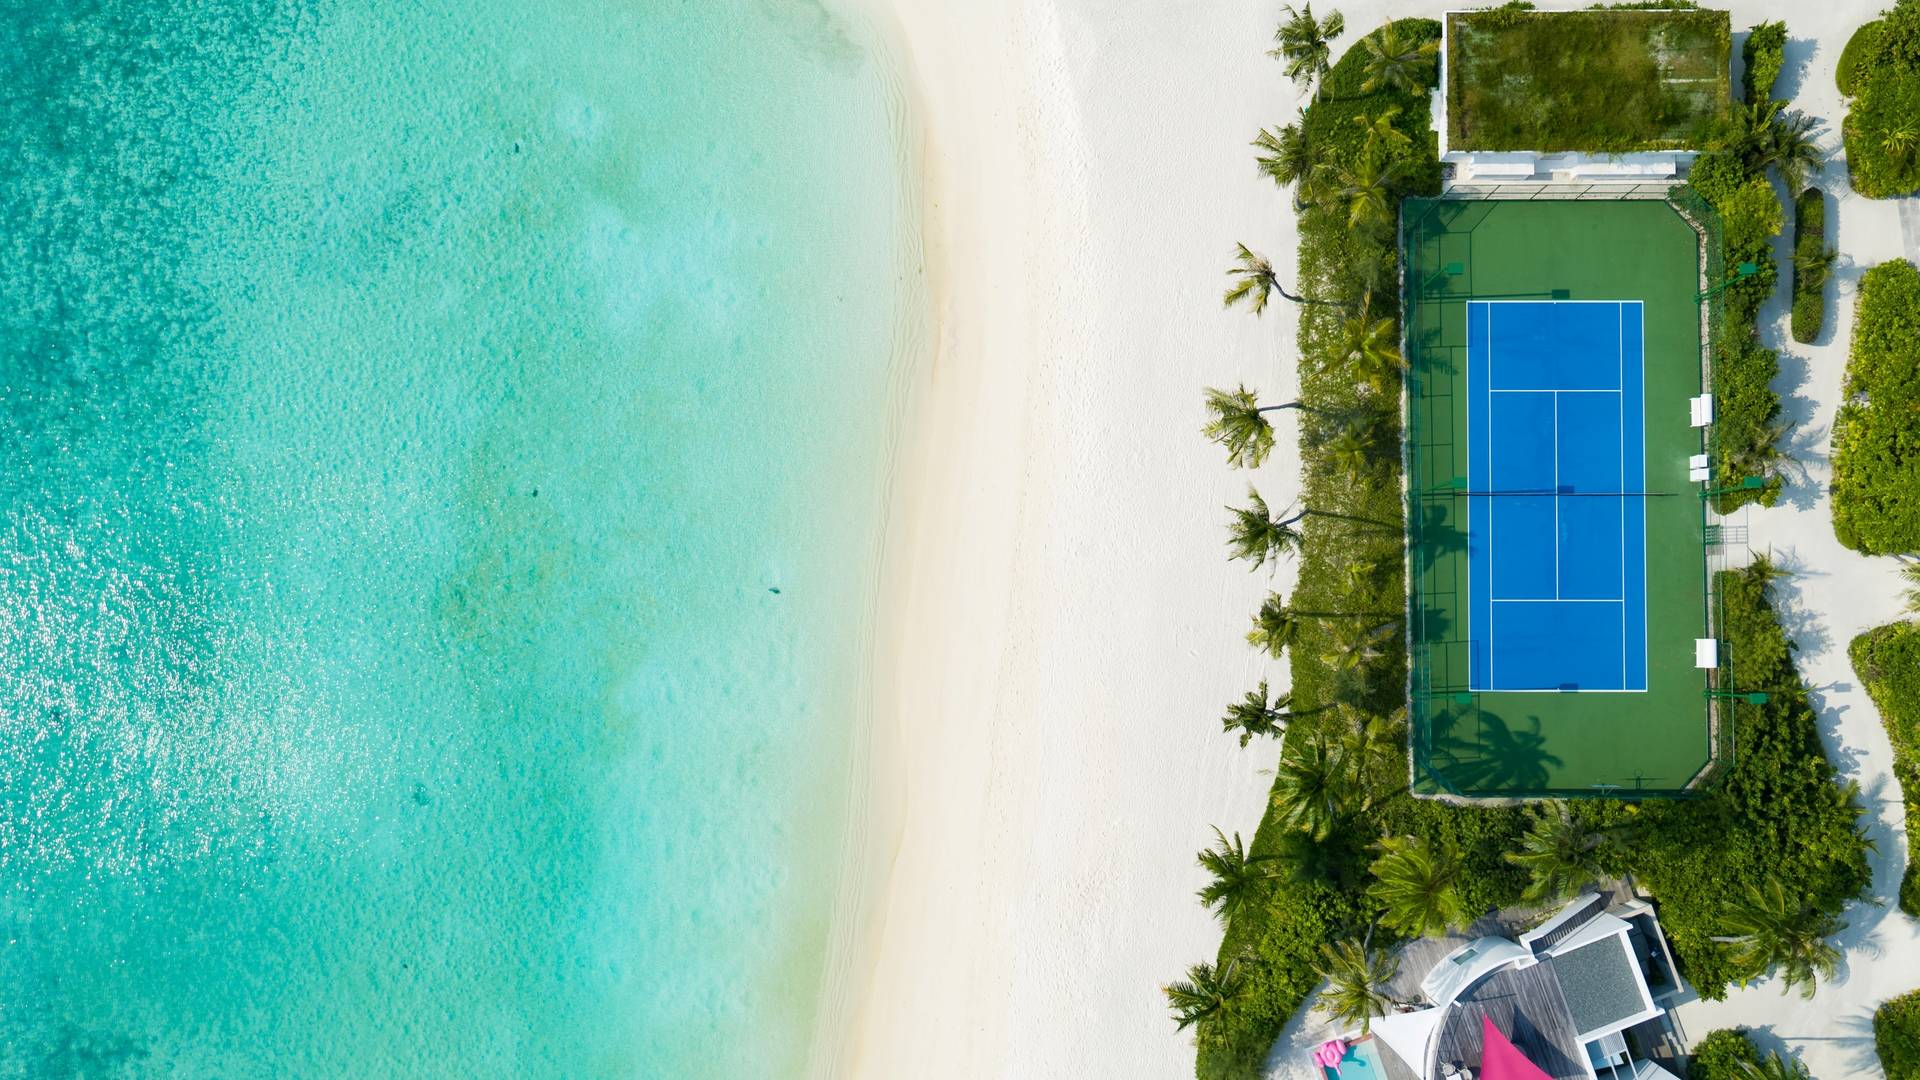 Jumeirah Maldives tennis court from a bird's eye view